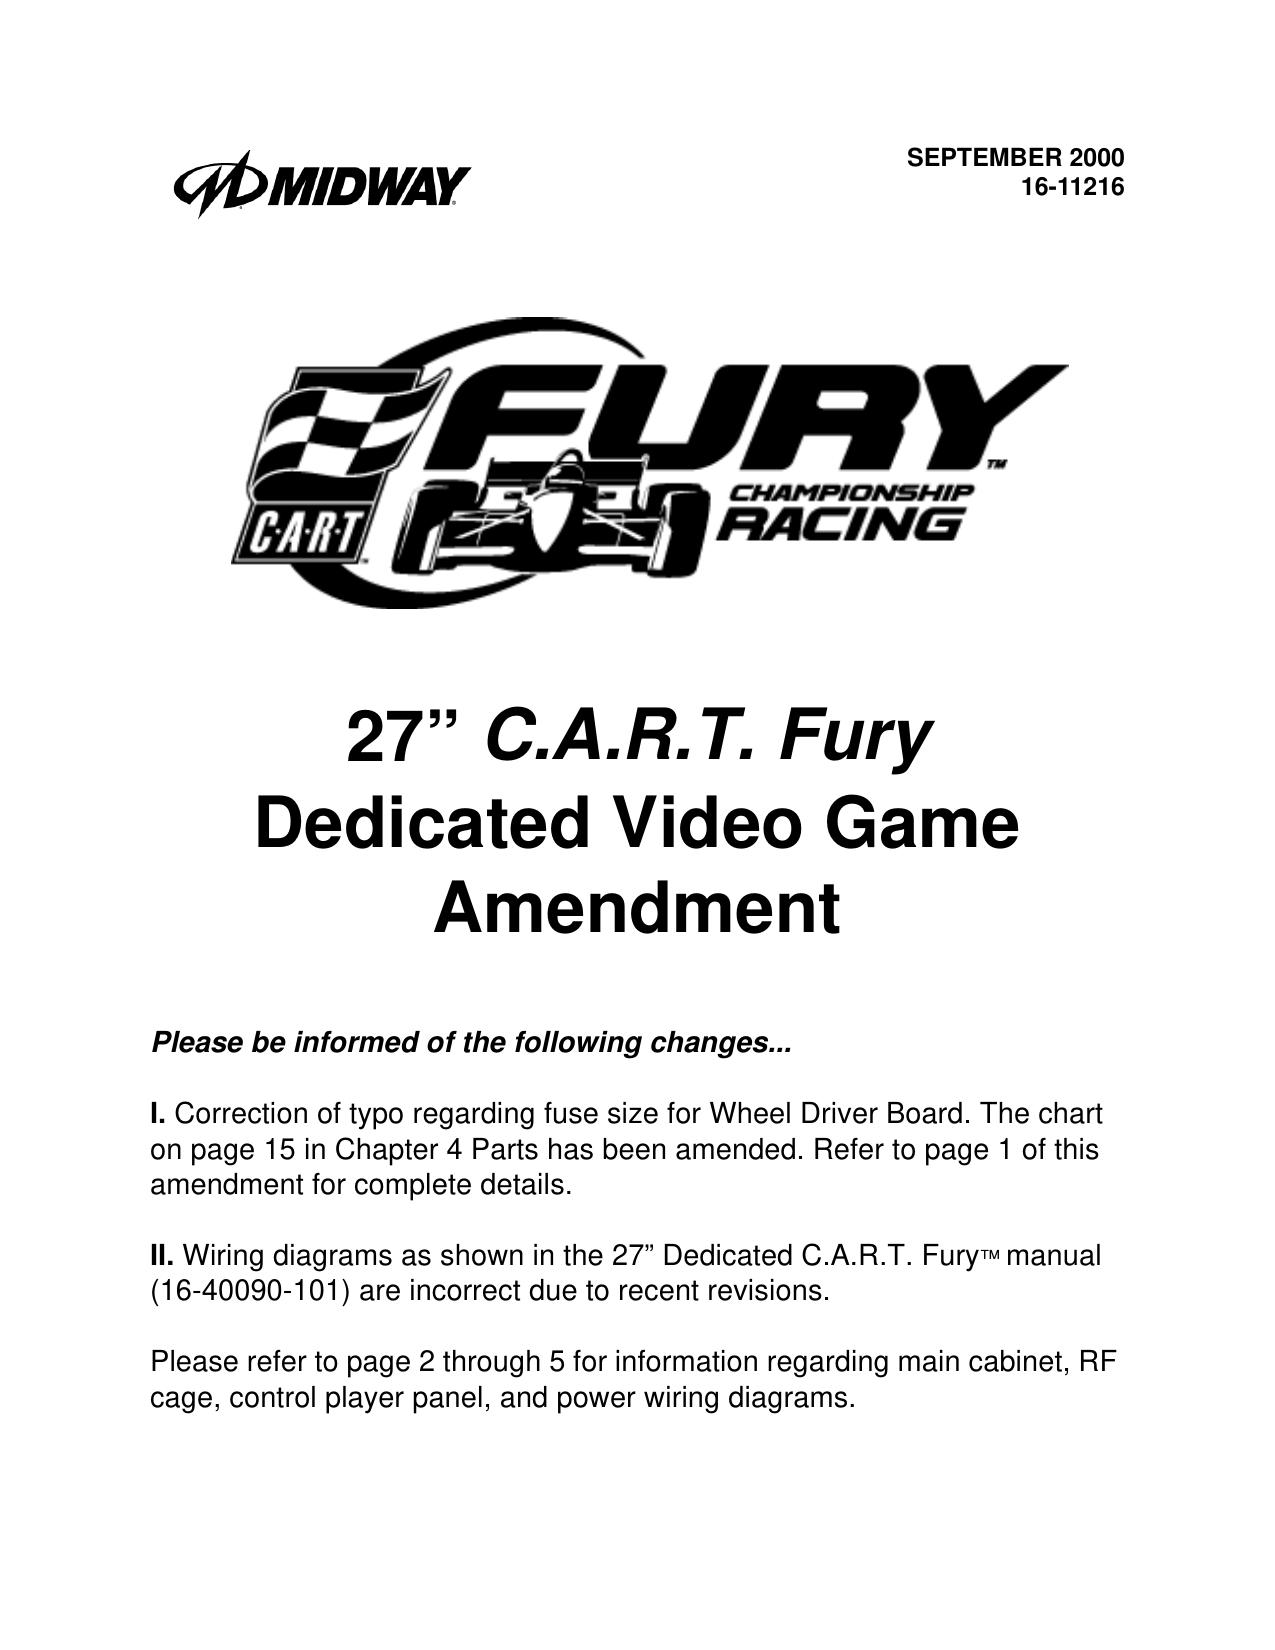 Kart Fury 27in Amendment